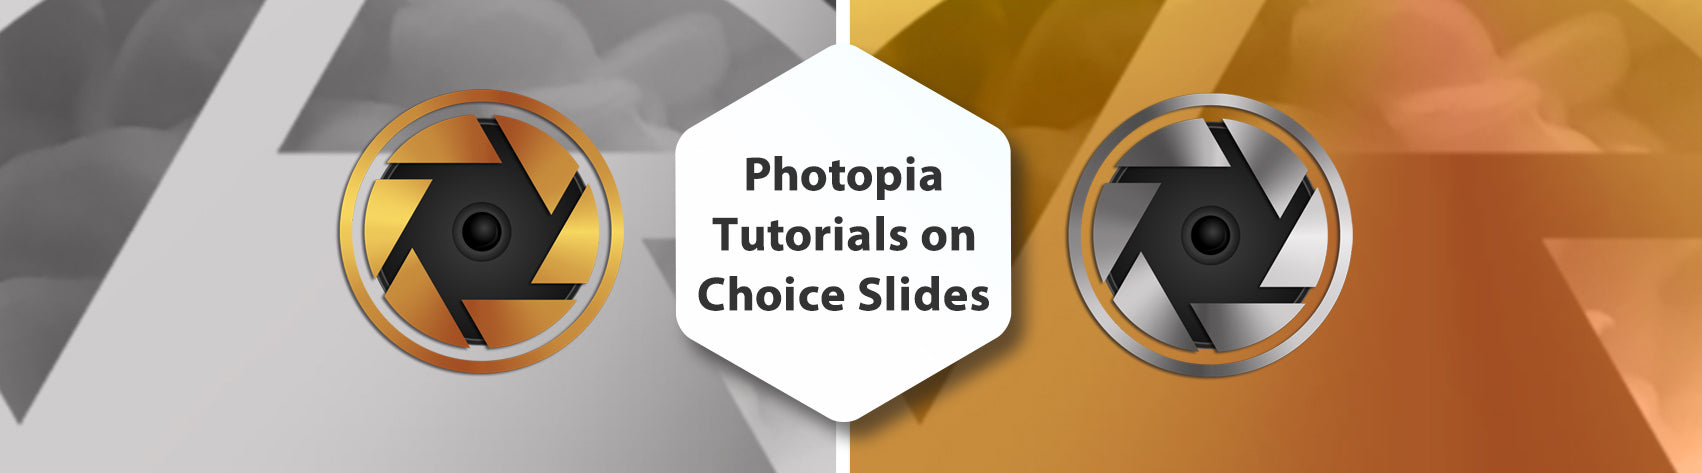 Photopia Tutorials on Choice Slides